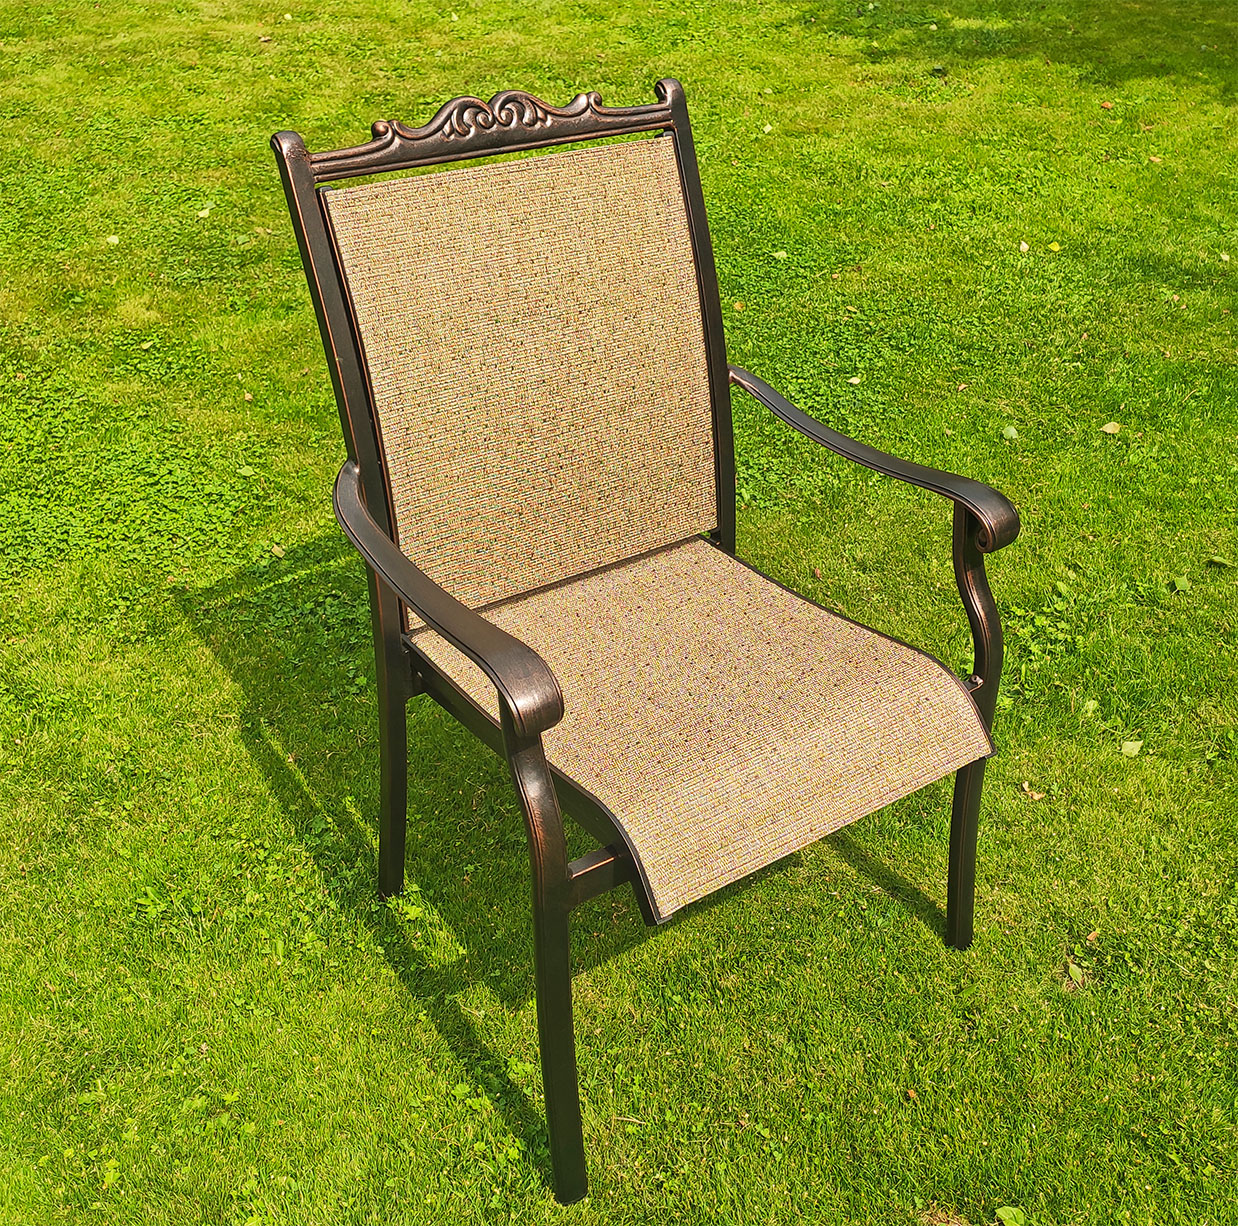 Кресло с текстиленом премиум, производство садовой мебели, кресло для кафе и пансионата, шезлонг металли текстилен, мебель из литого алюминия